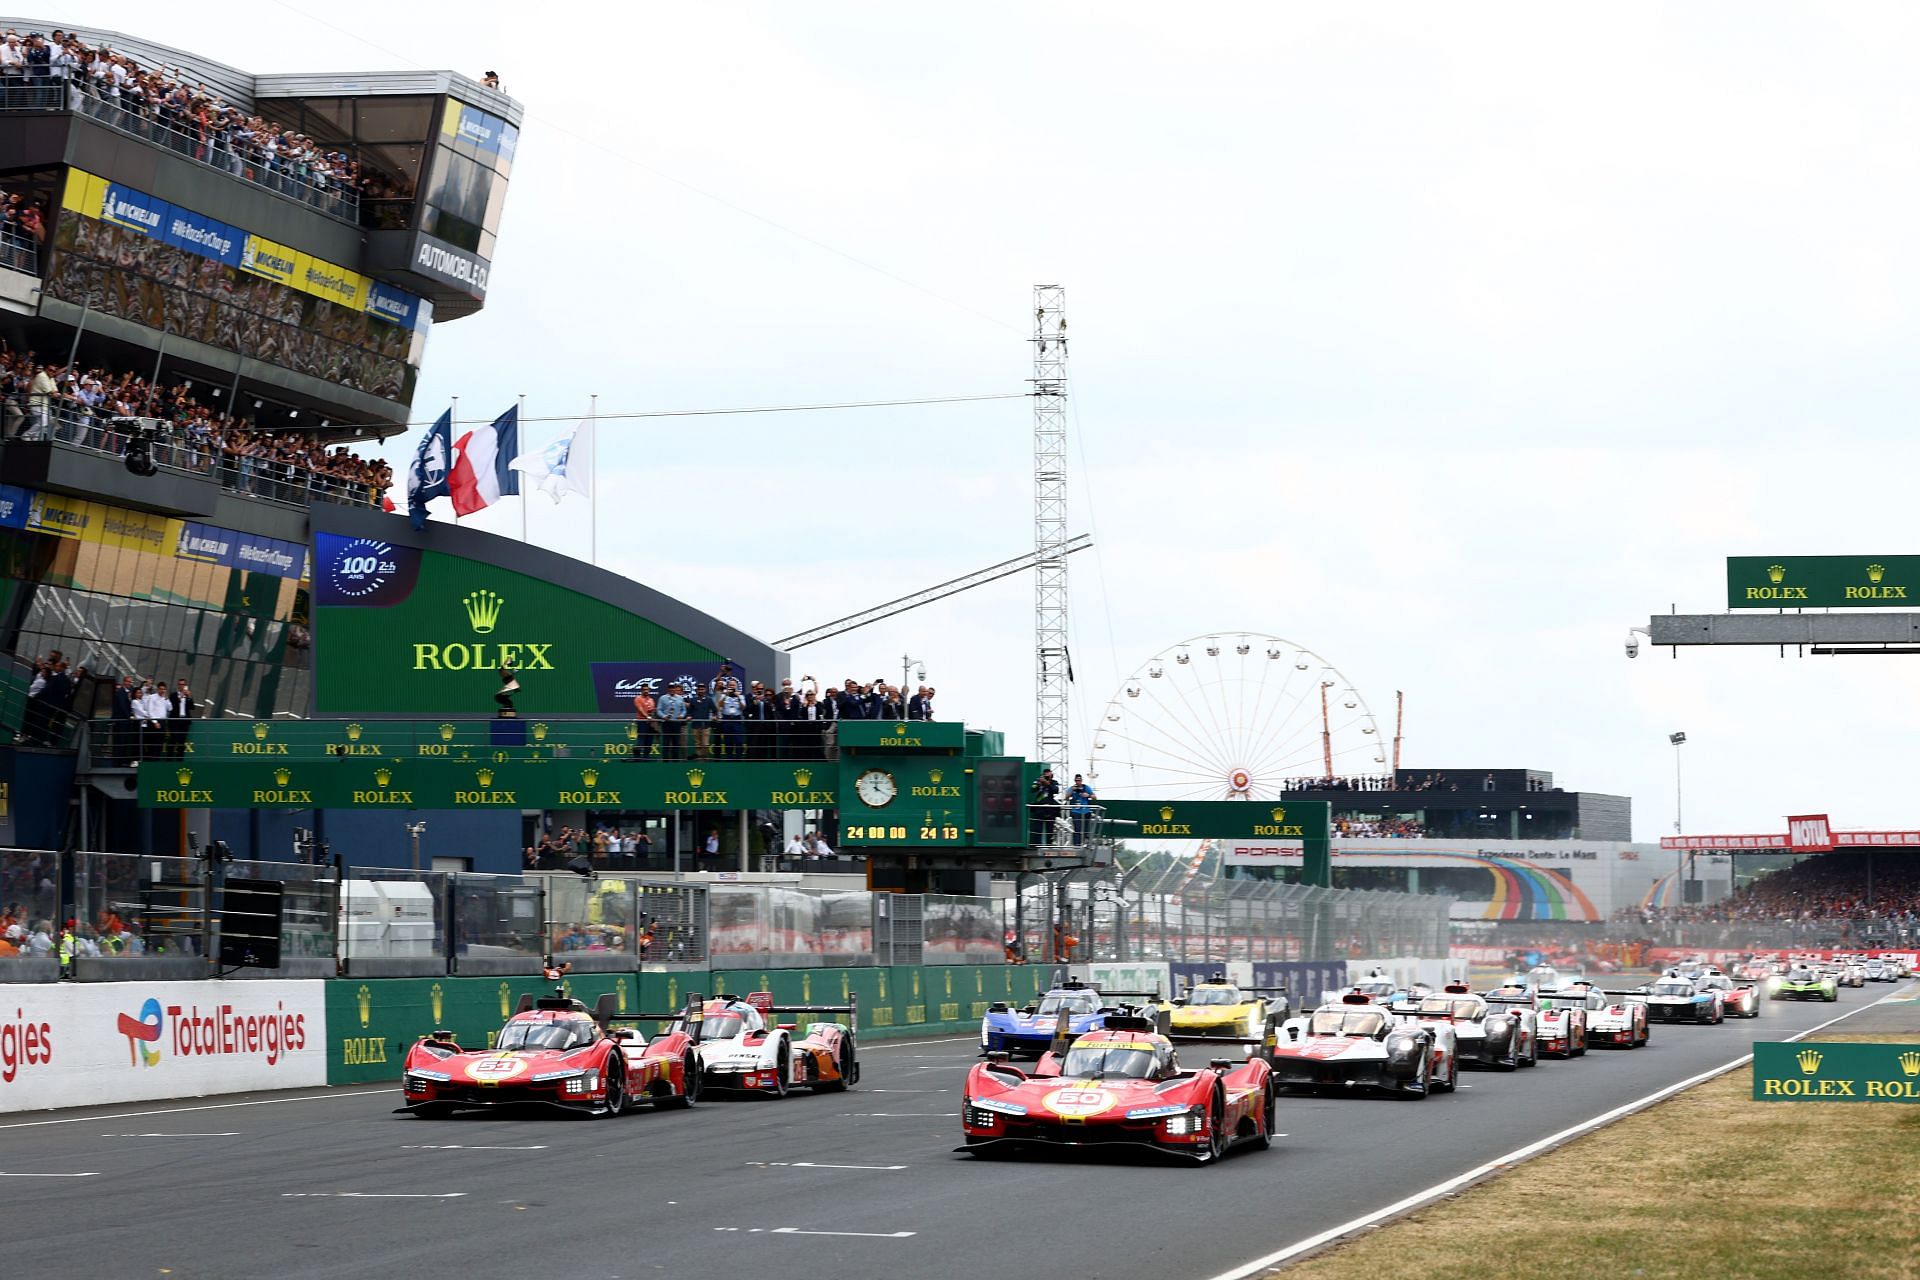 Le Mans 24 Hour Race